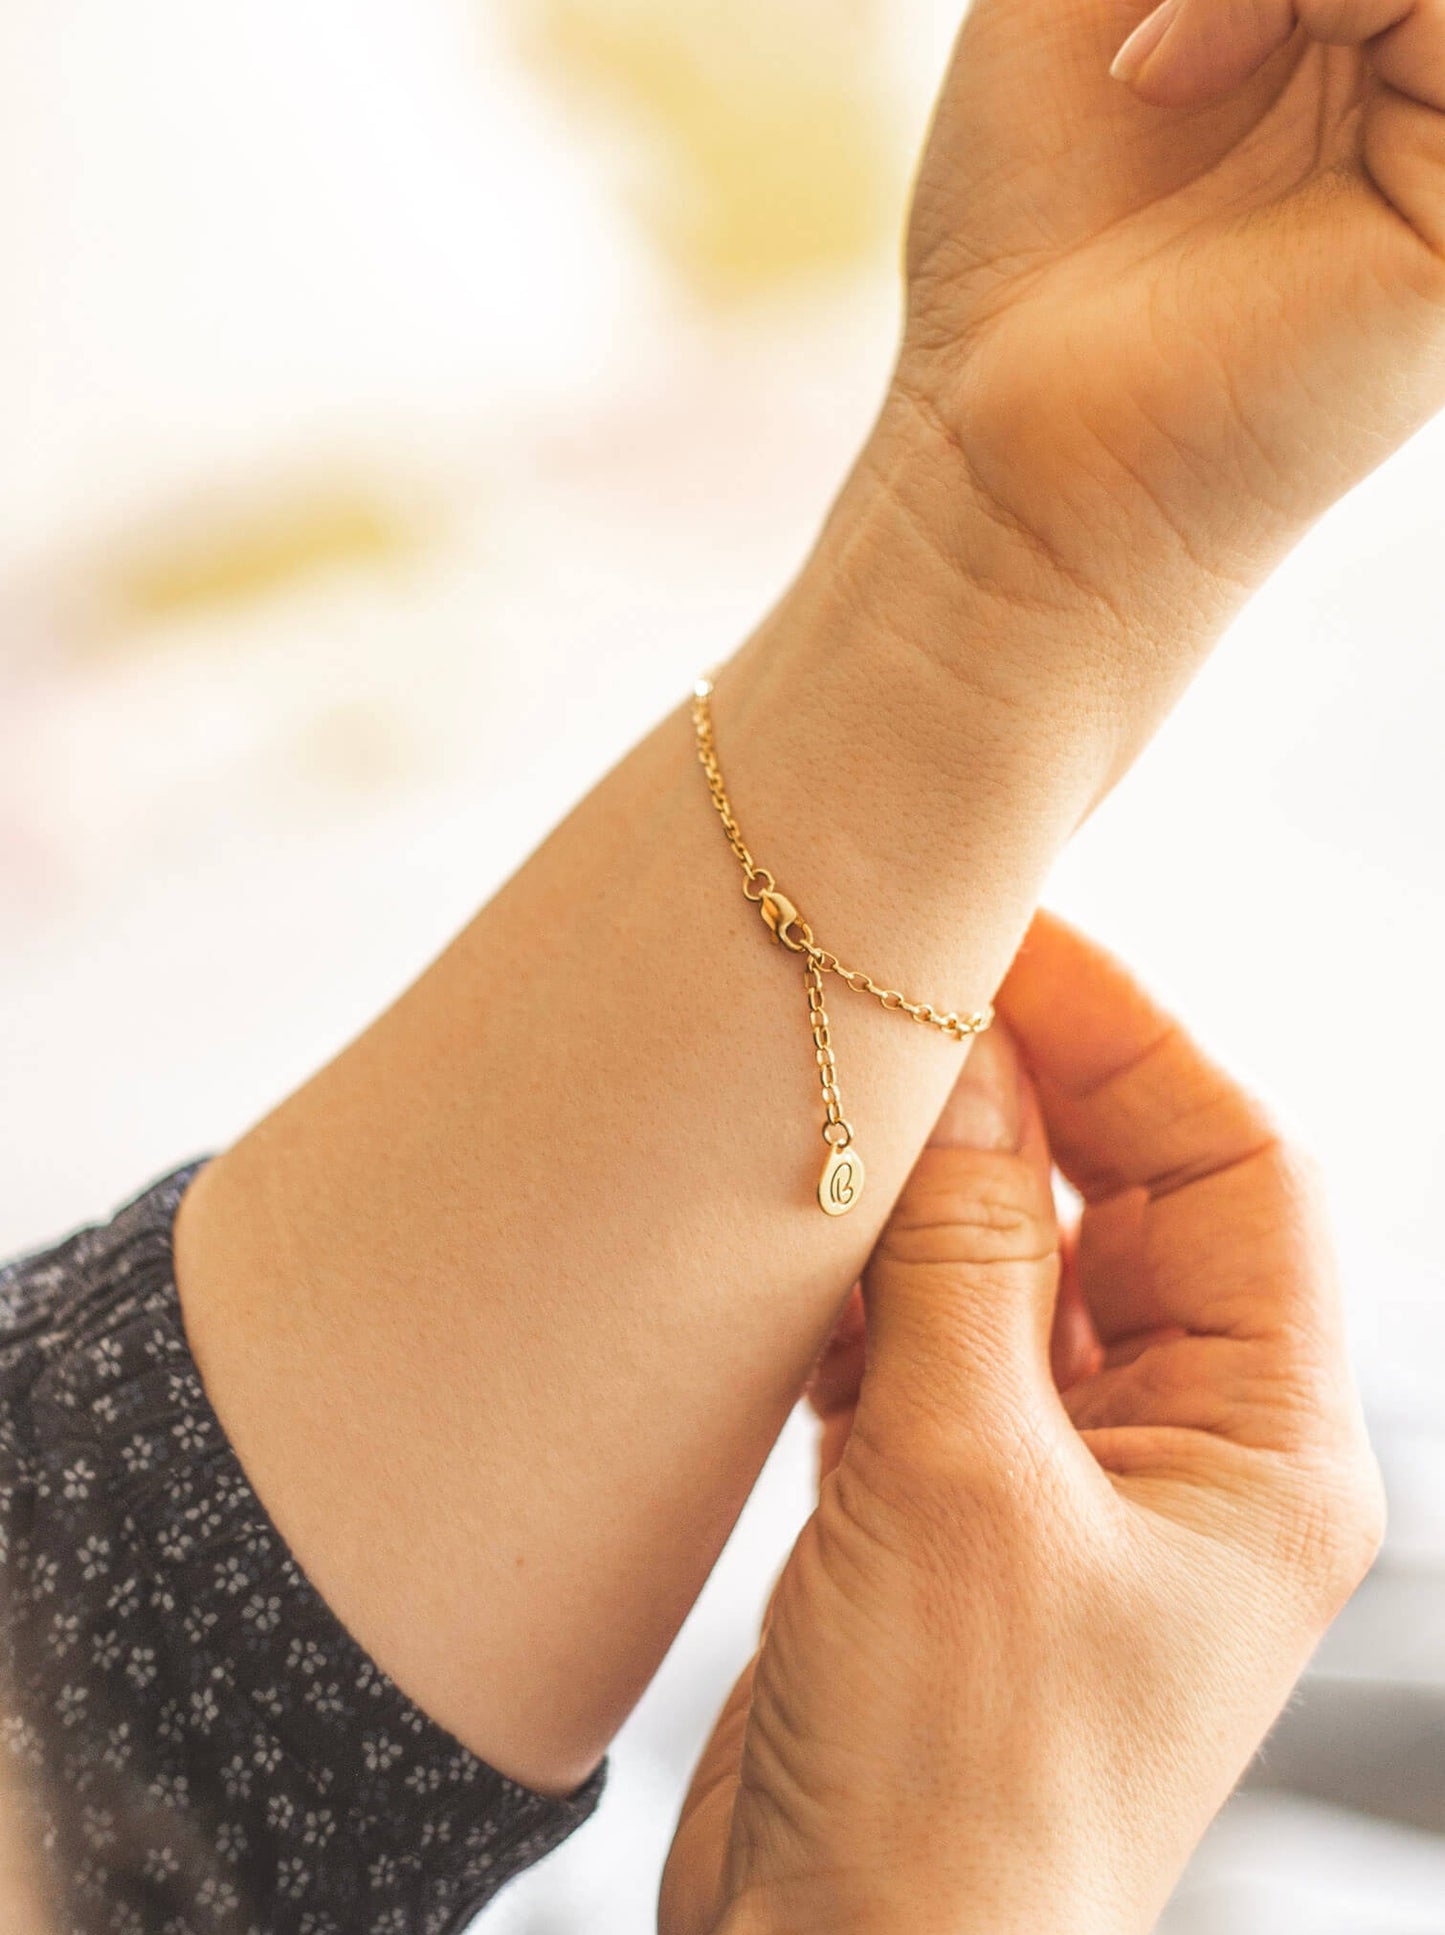 Złota bransoletka na kobiecej ręce. Zdjęcie pokazuje tylną część bransoletki. z zapięciem i zawieszką z logo marki Believy.